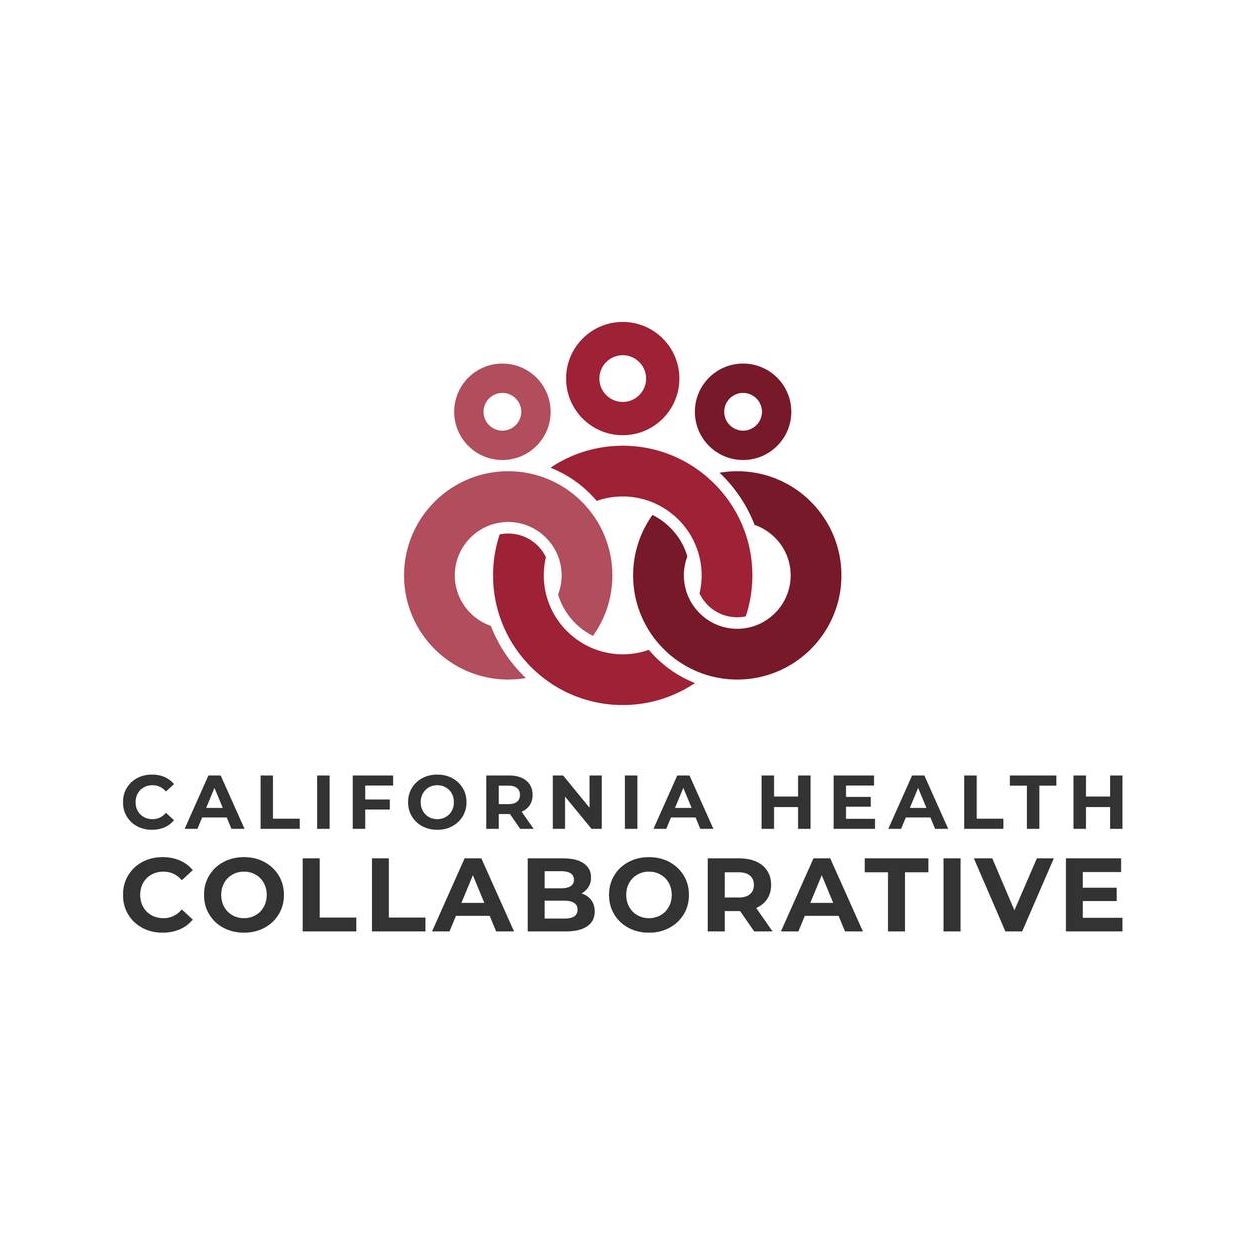 California Health Collaborative Unidos por Salud